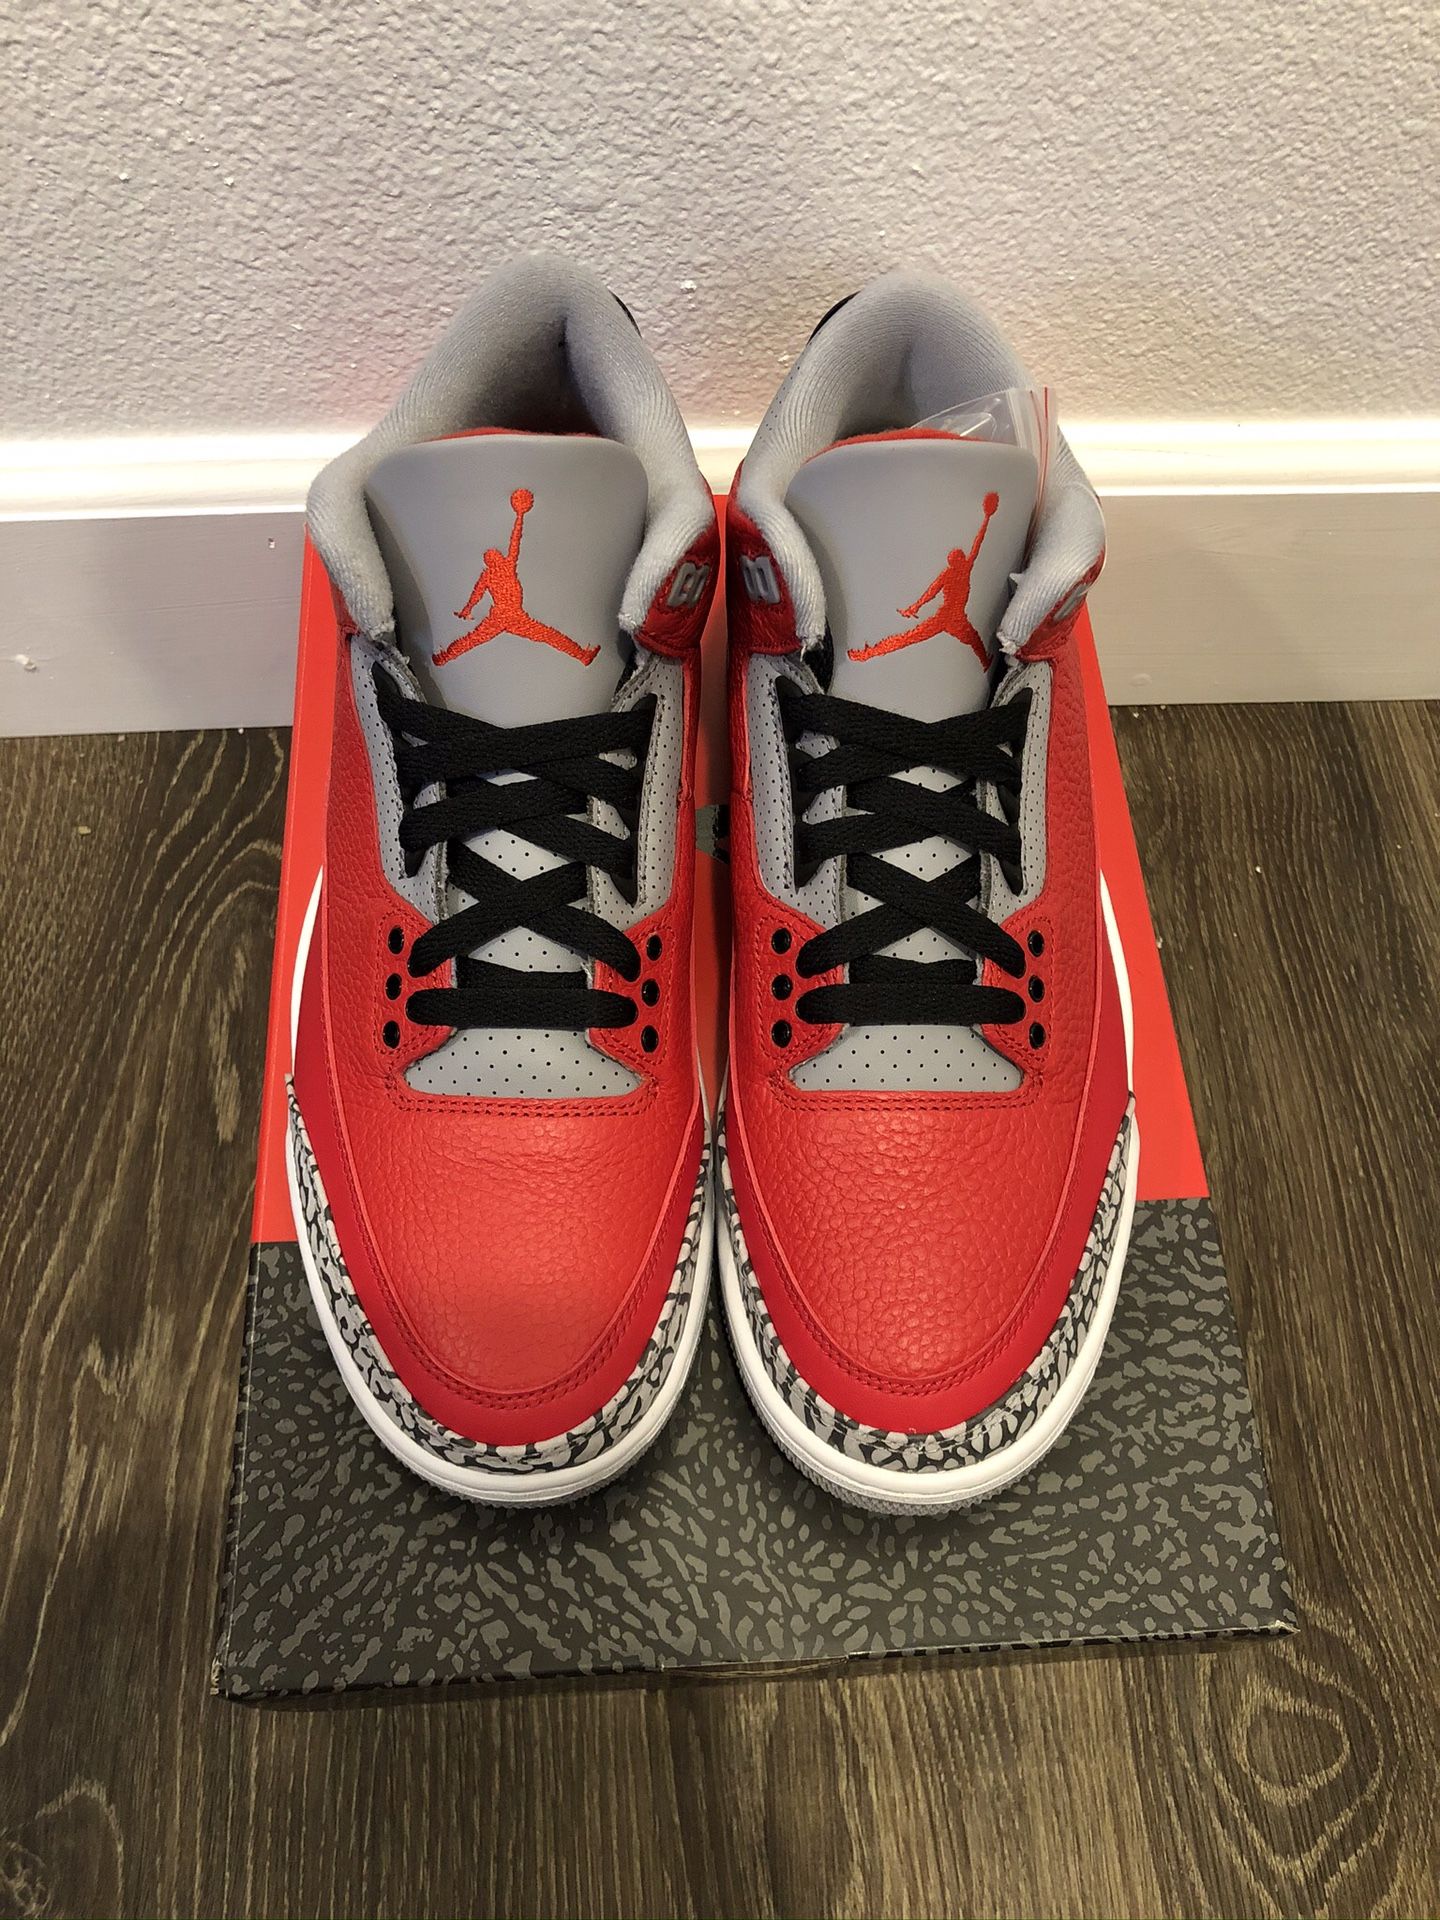 Jordan 3 Retro OG - Fire Red Cement Size 8.5 Deadstock Never Worn